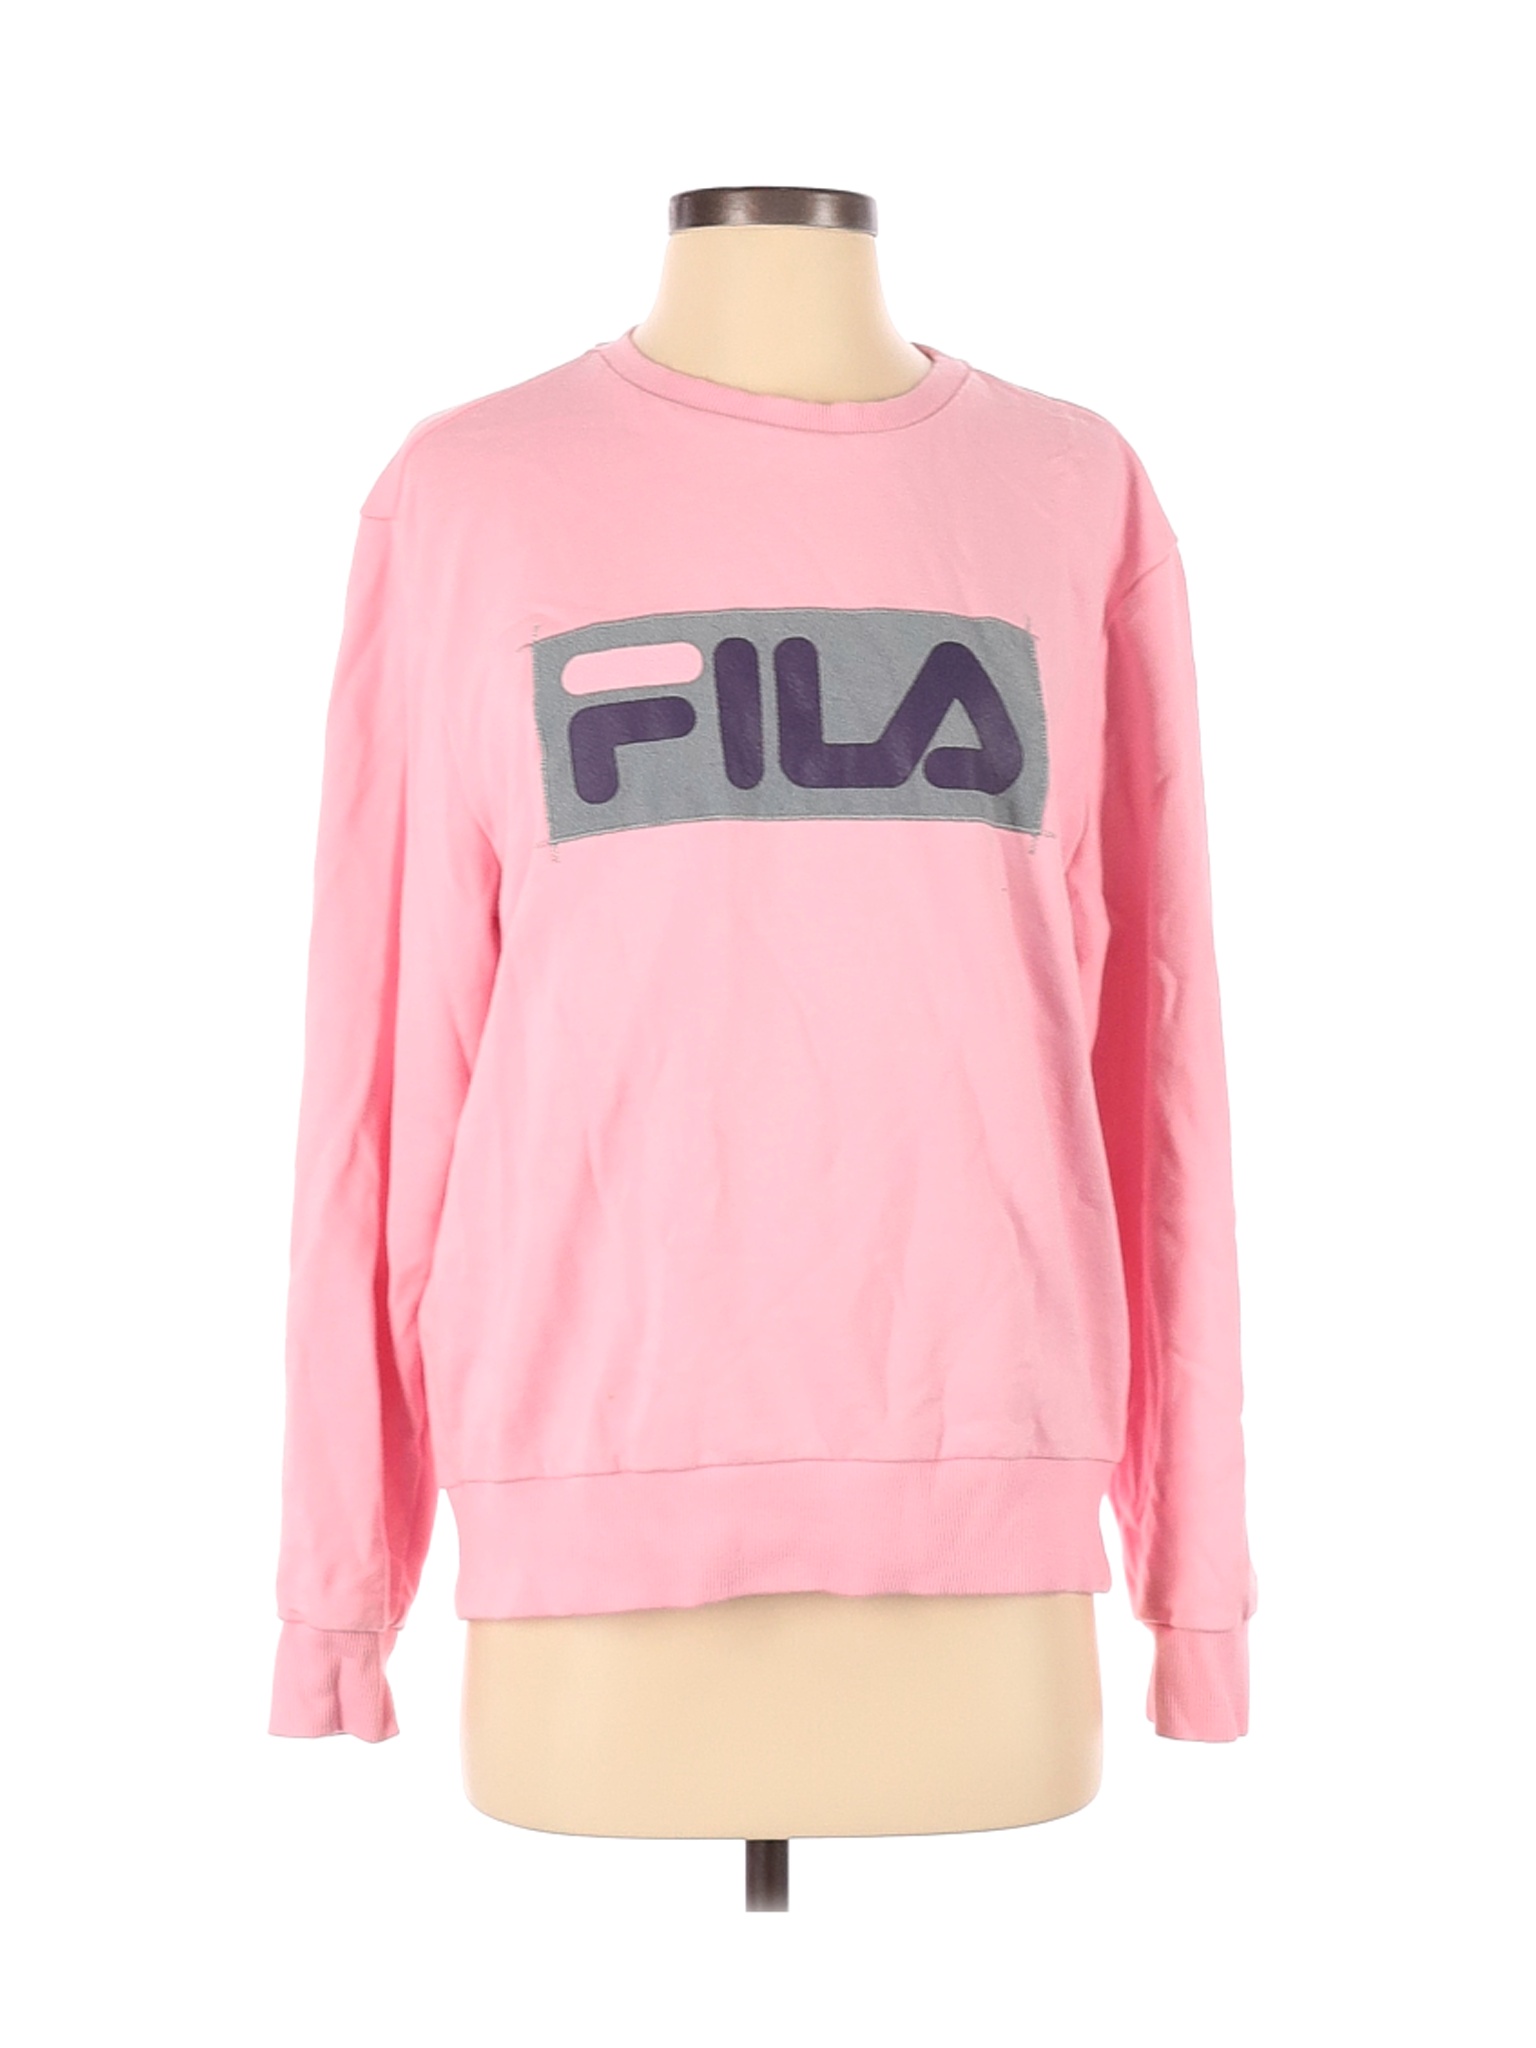 Fila Women Pink Sweatshirt S | eBay